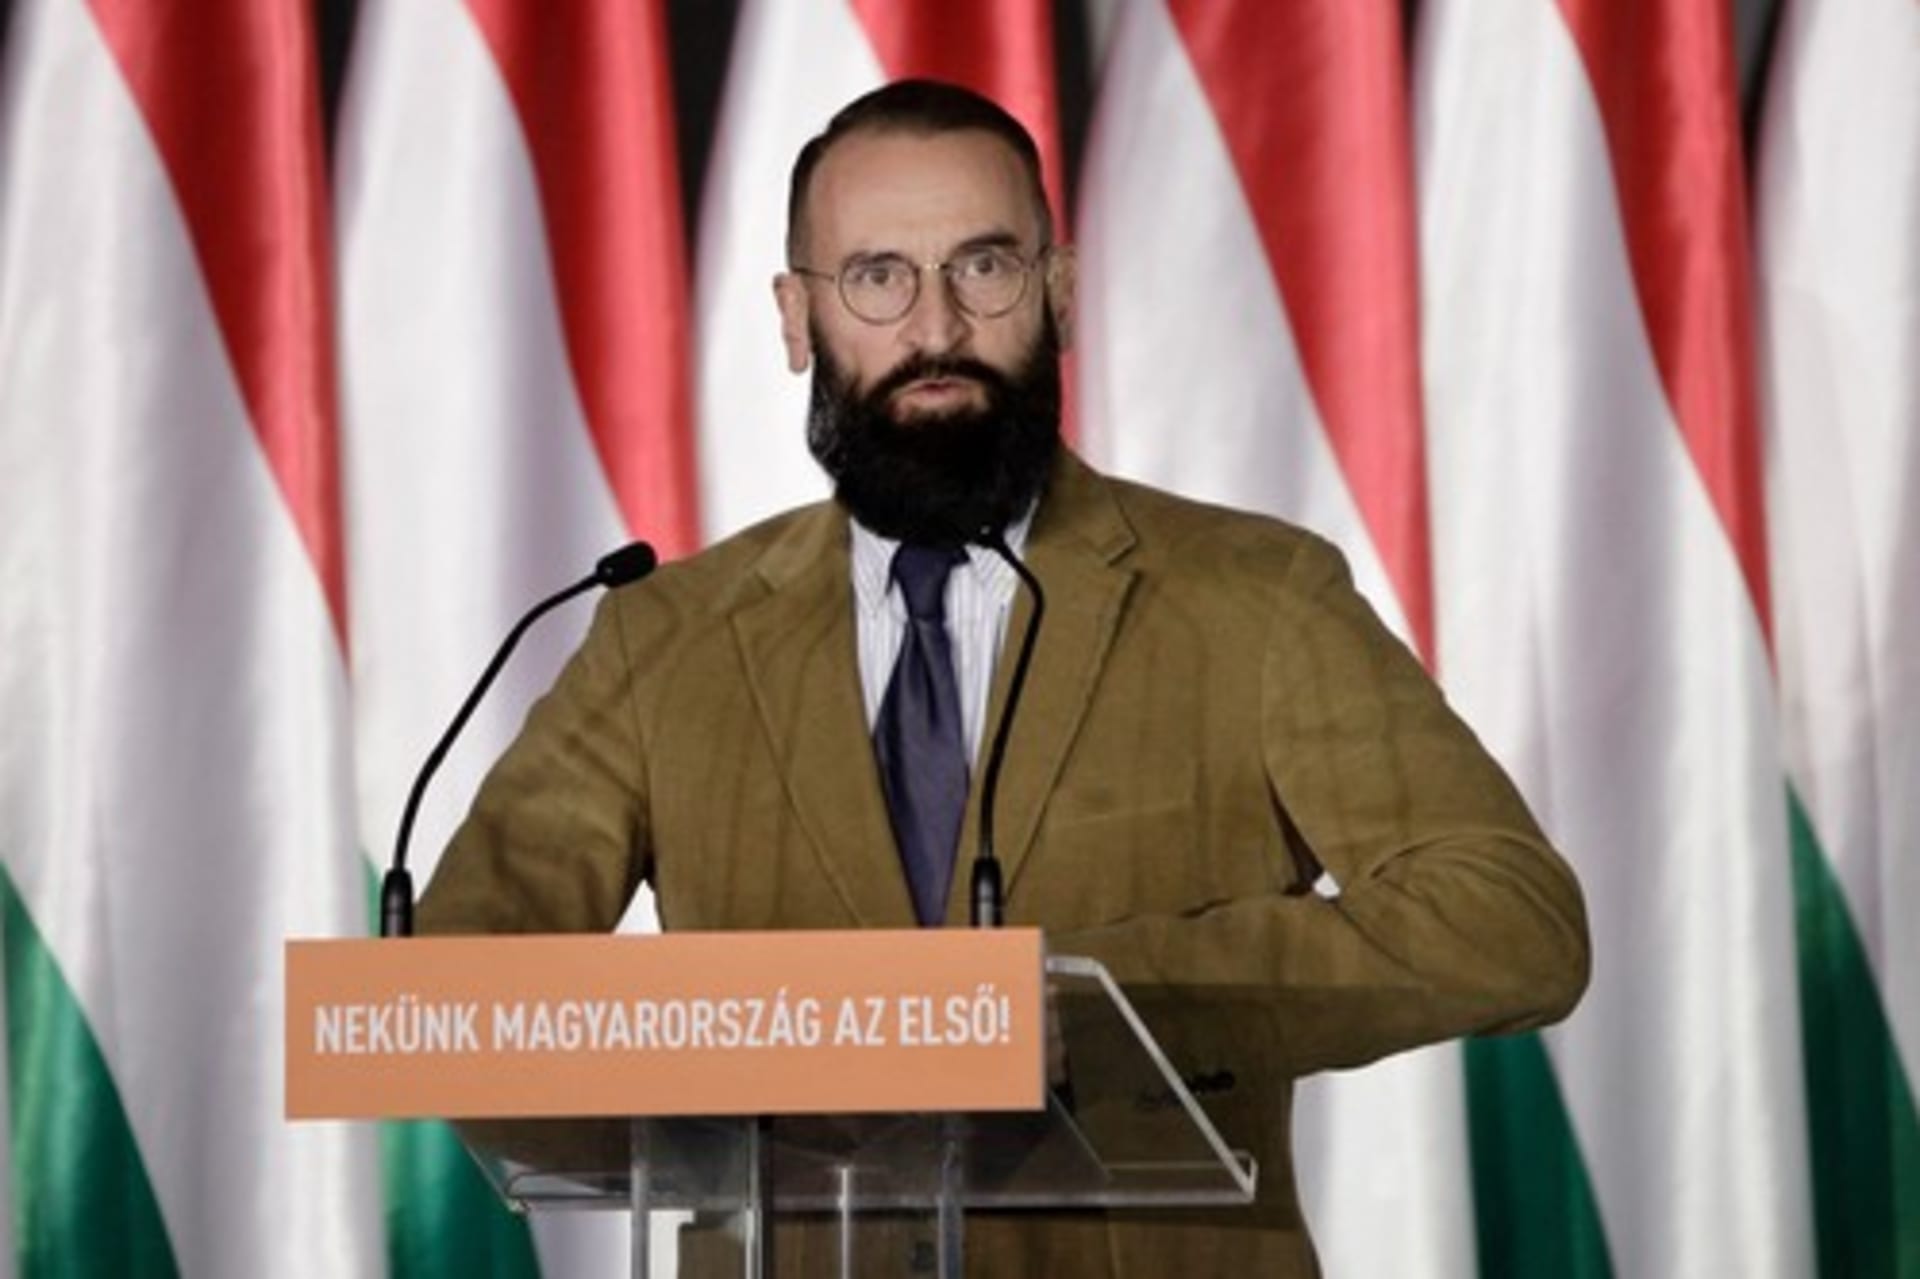 Bývalý maďarský europoslanec József Szájer v listopadu 2020 utíkal před policisty z nelegální gay párty. V Maďarsku přitom platil za bojovníka za manželství jen pro muže a ženy.